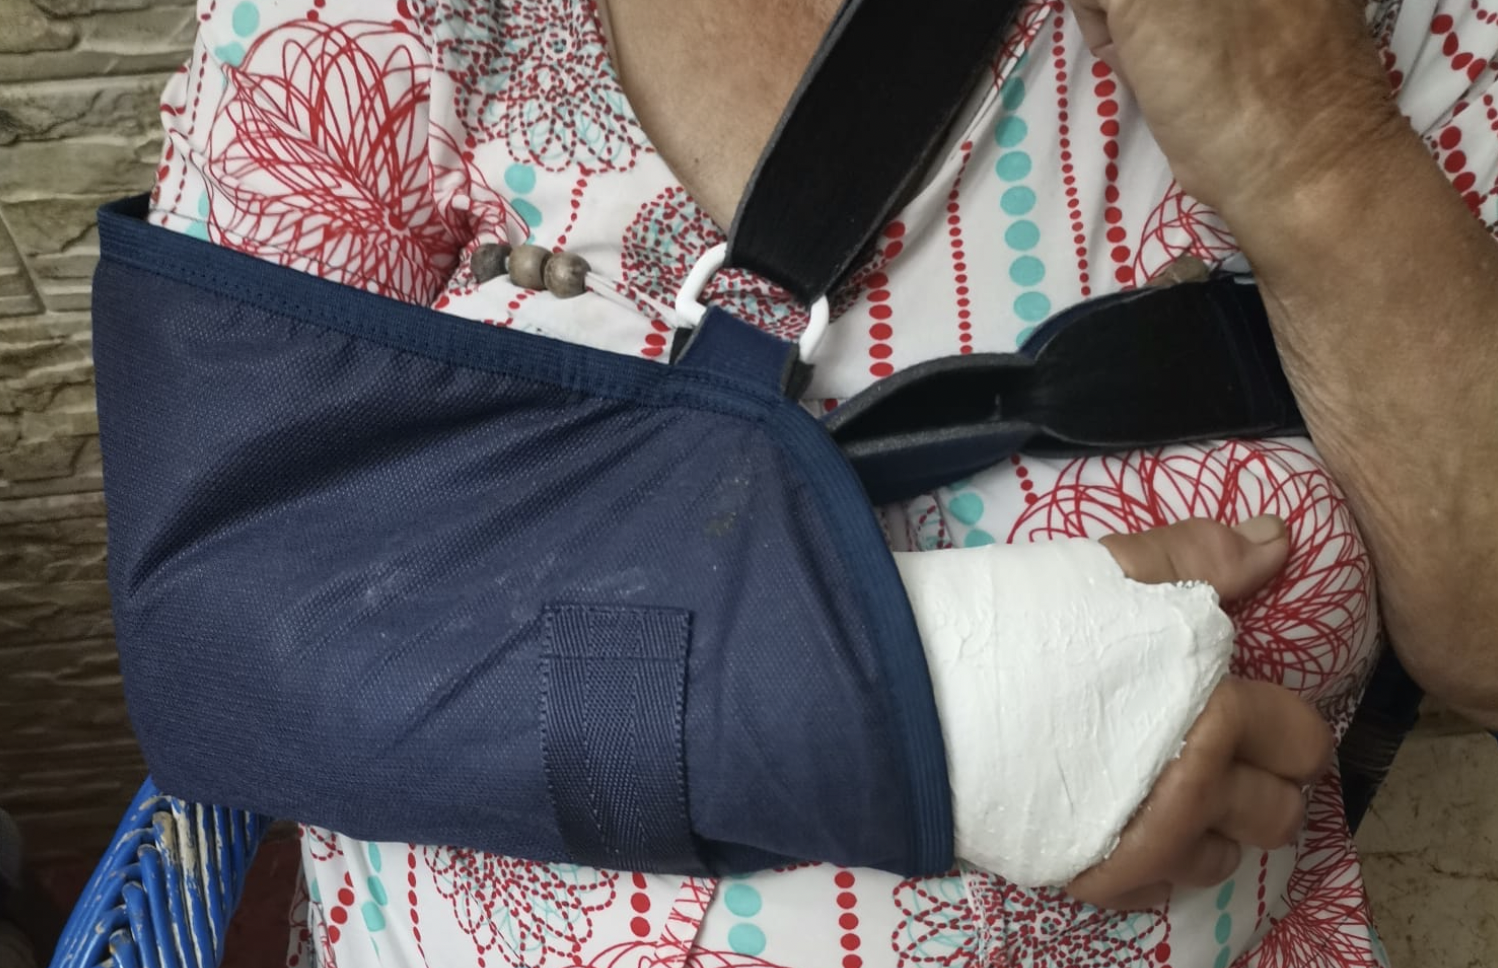 Una anciana se rompe un brazo tras caerse en una calle en malas condiciones en Conil.